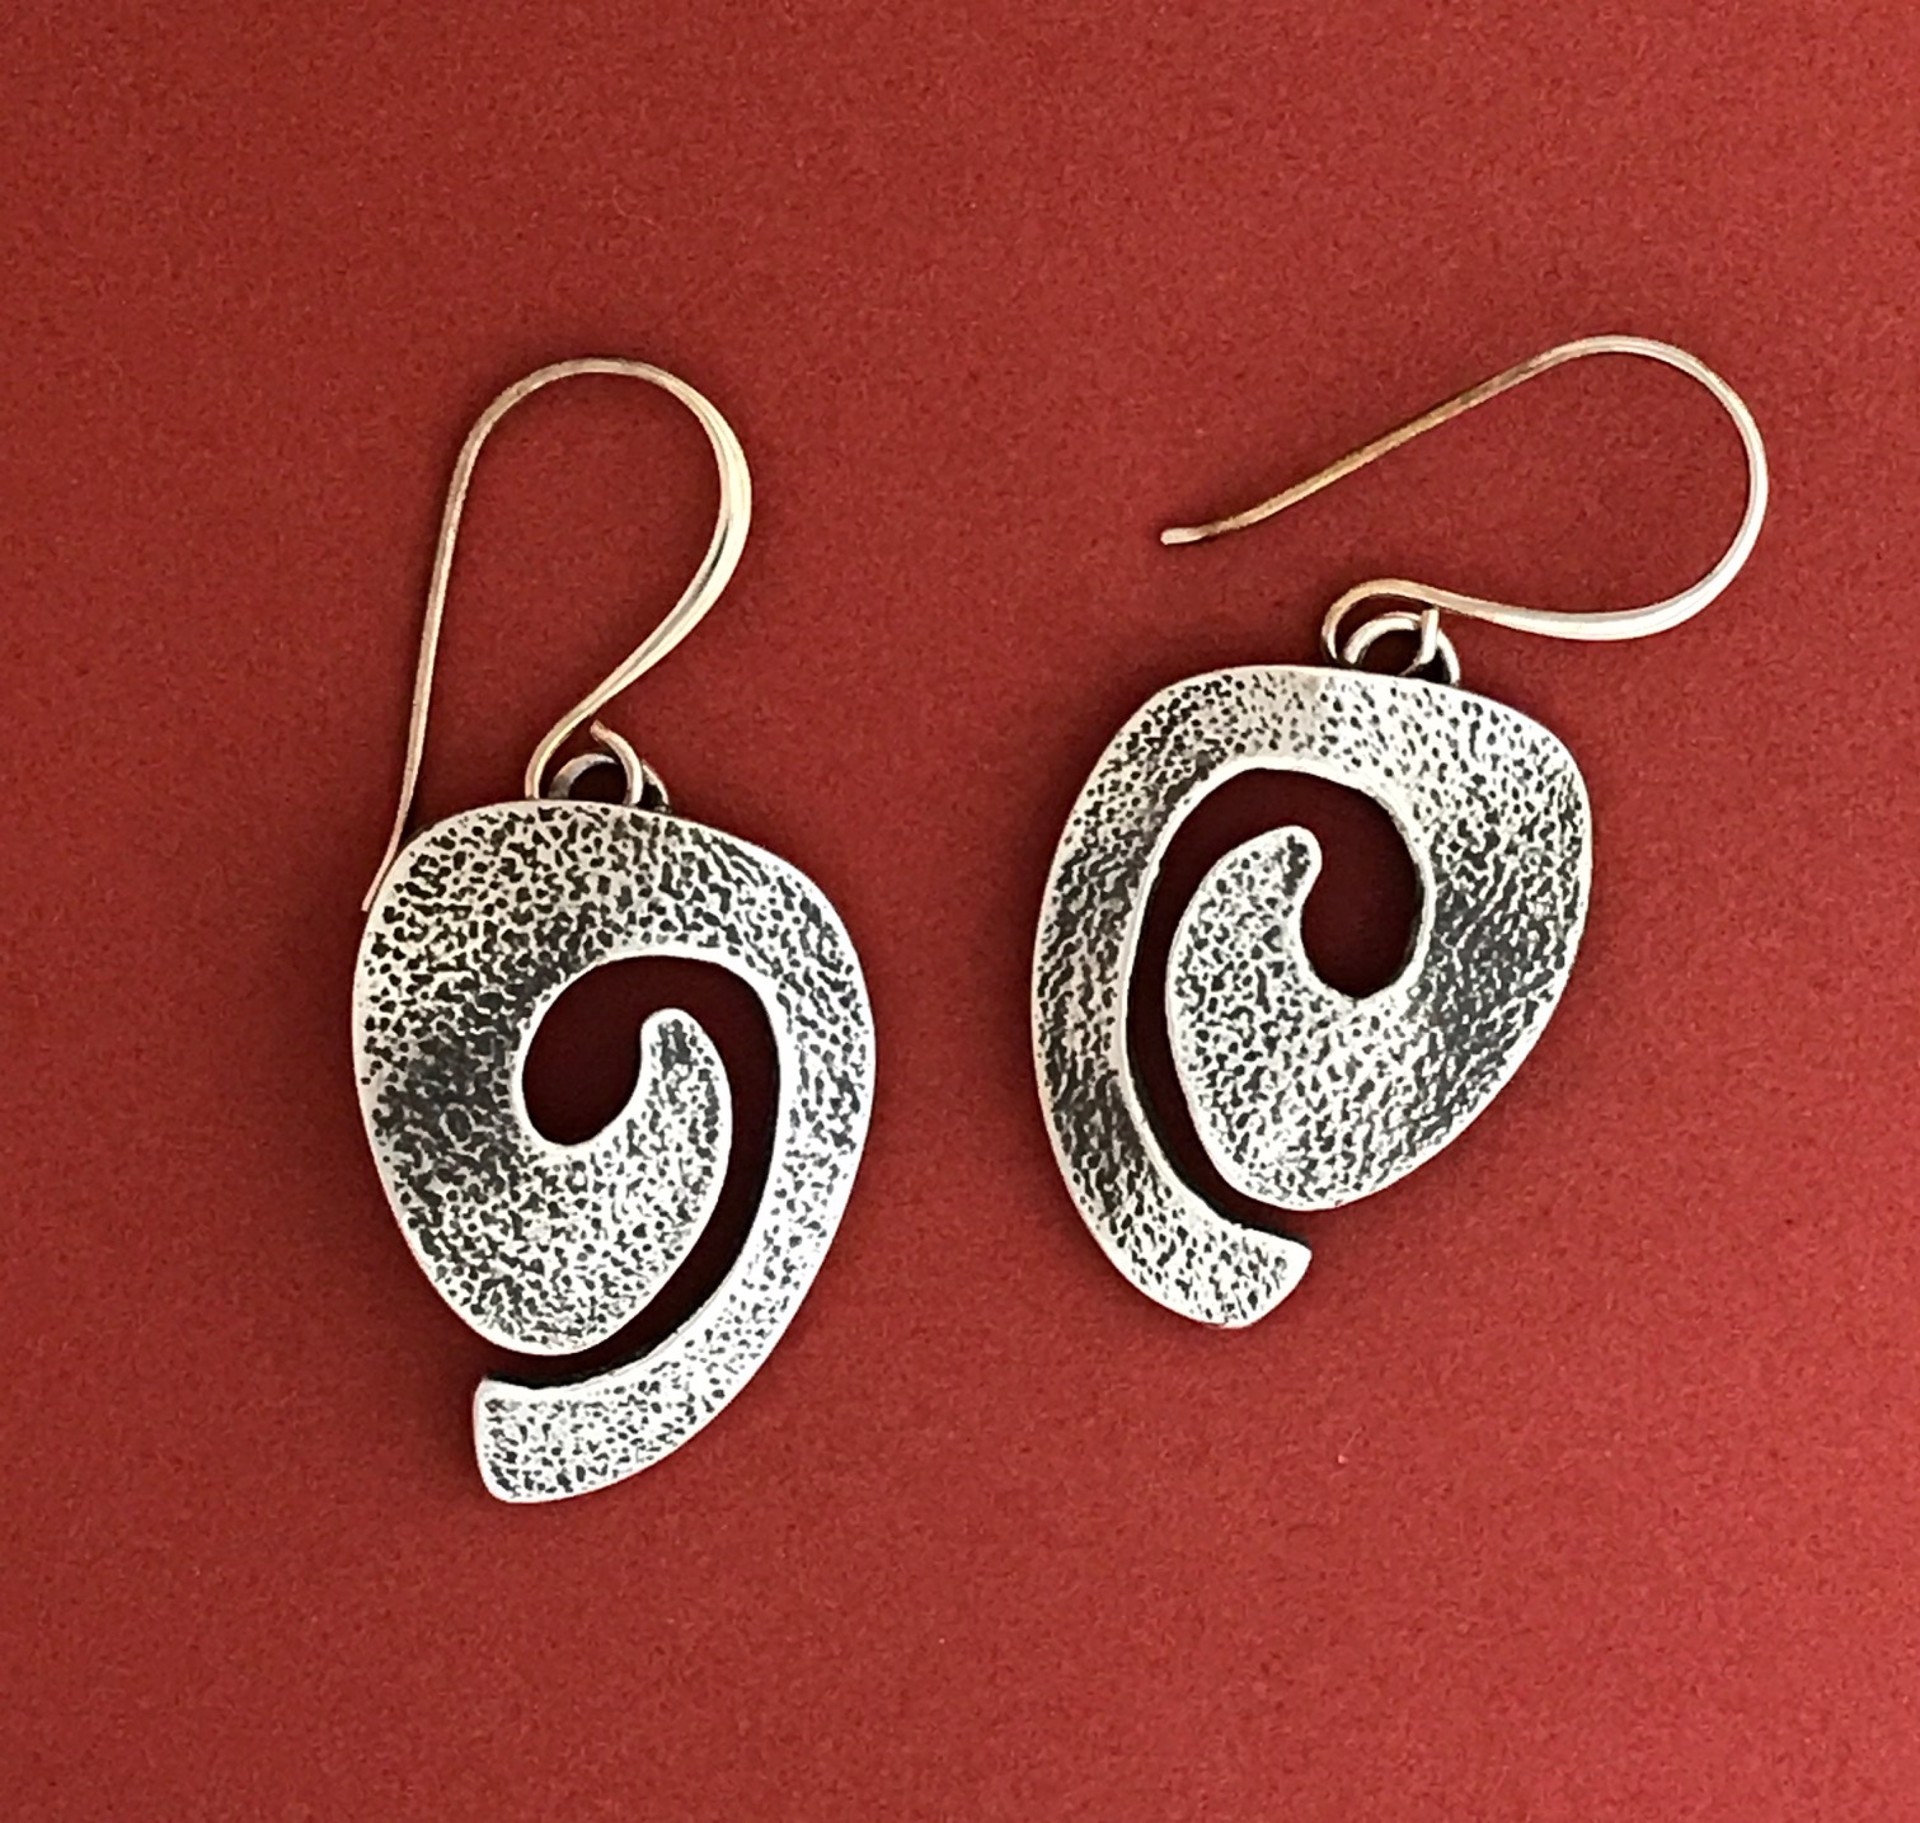 Swirl earrings (dangle) by Melanie Yazzie